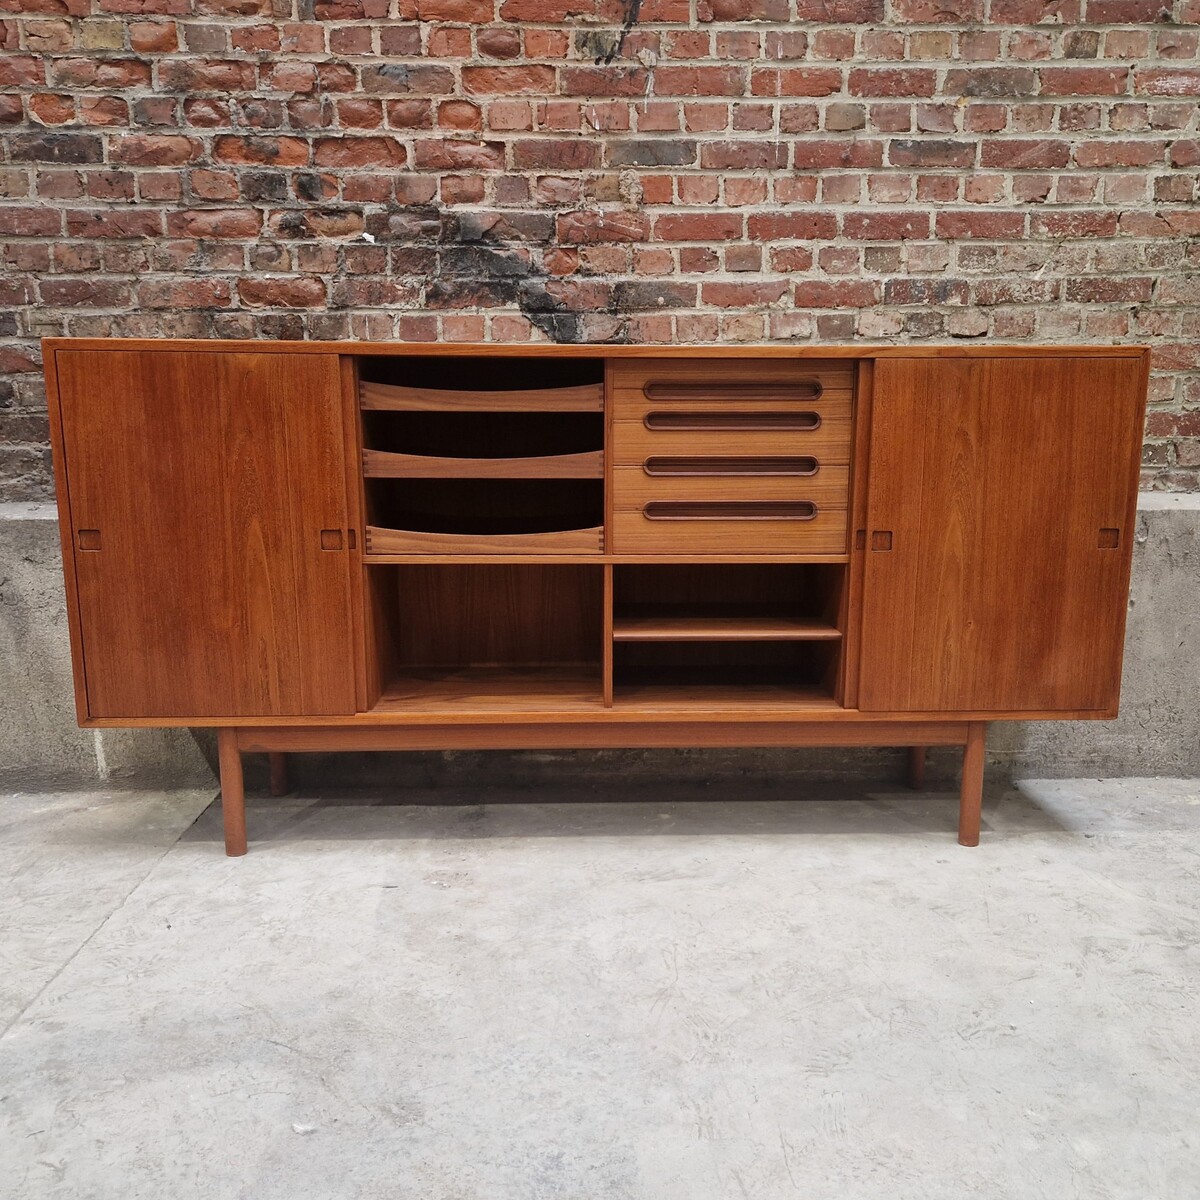 Very low teak vintage danish sideboard, ideal flat screen cabinet, 2 sliding doors, 6 drawers